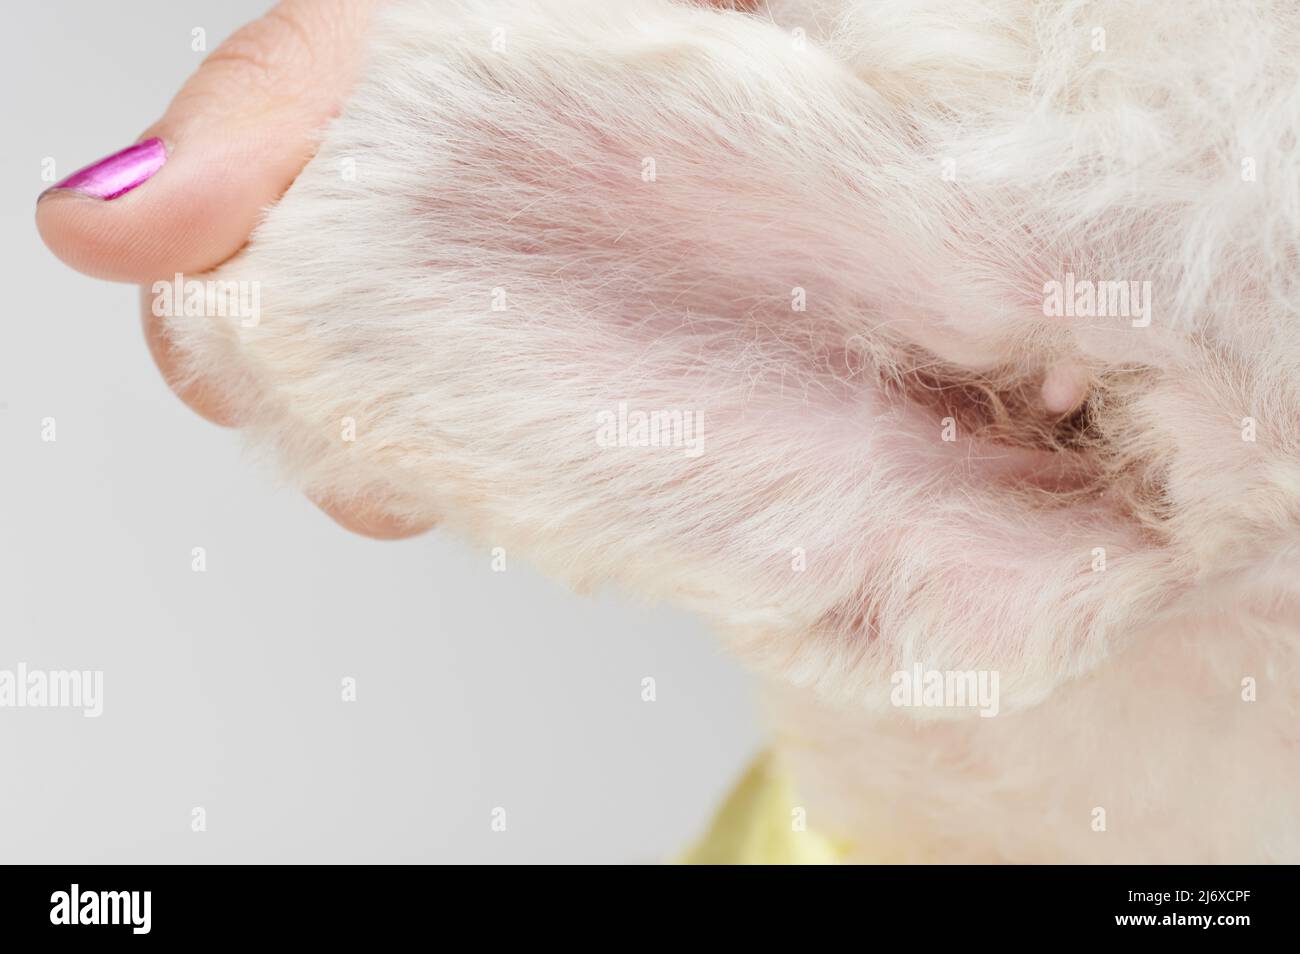 Limpie el oído sano del perro dentro de la vista después de arreglarse Foto de stock